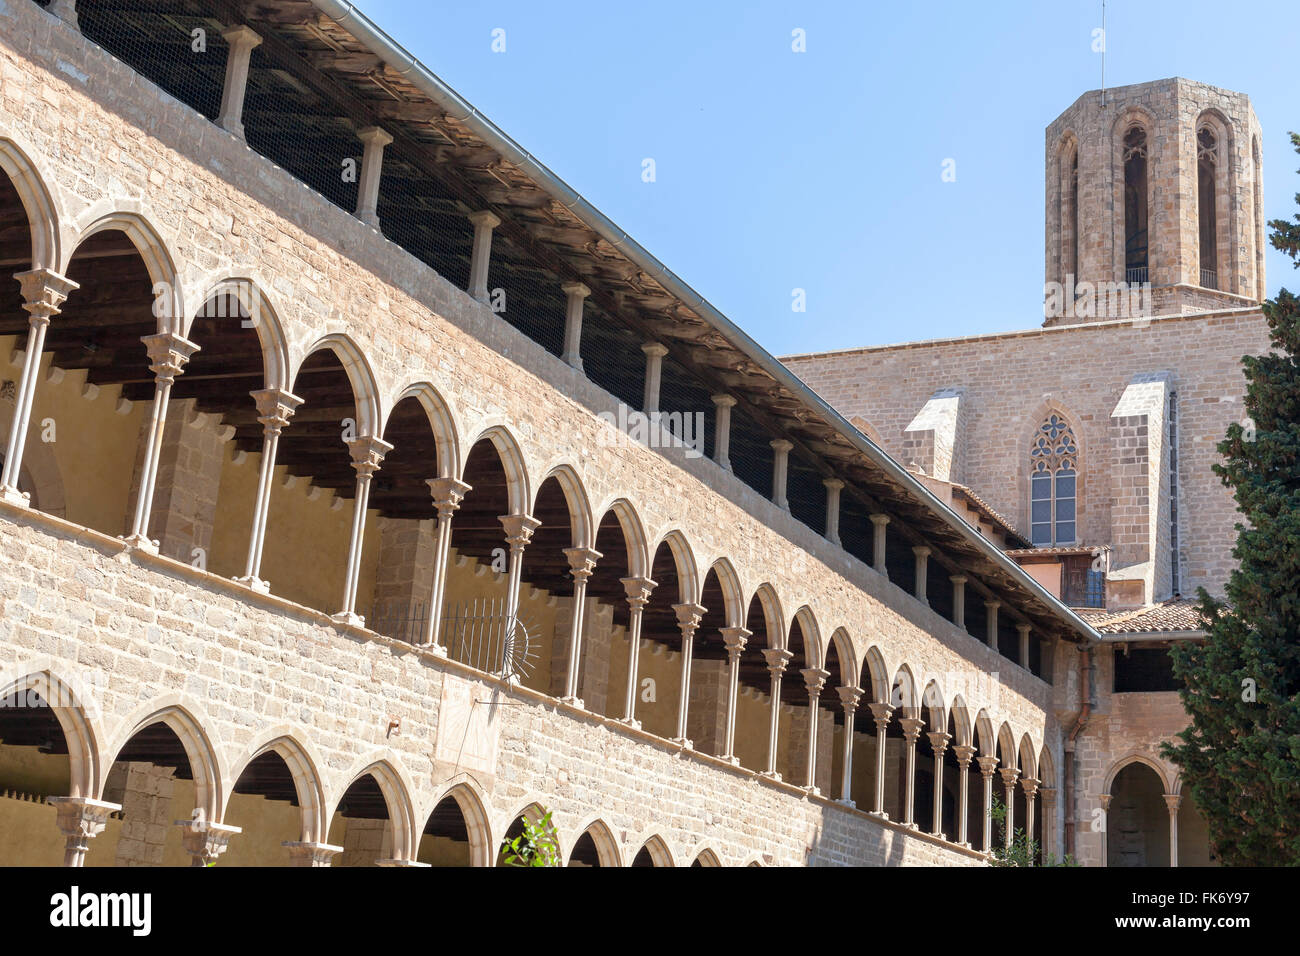 Reial Monestir de Santa Maria de Pedralbes. Barcellona. Foto Stock